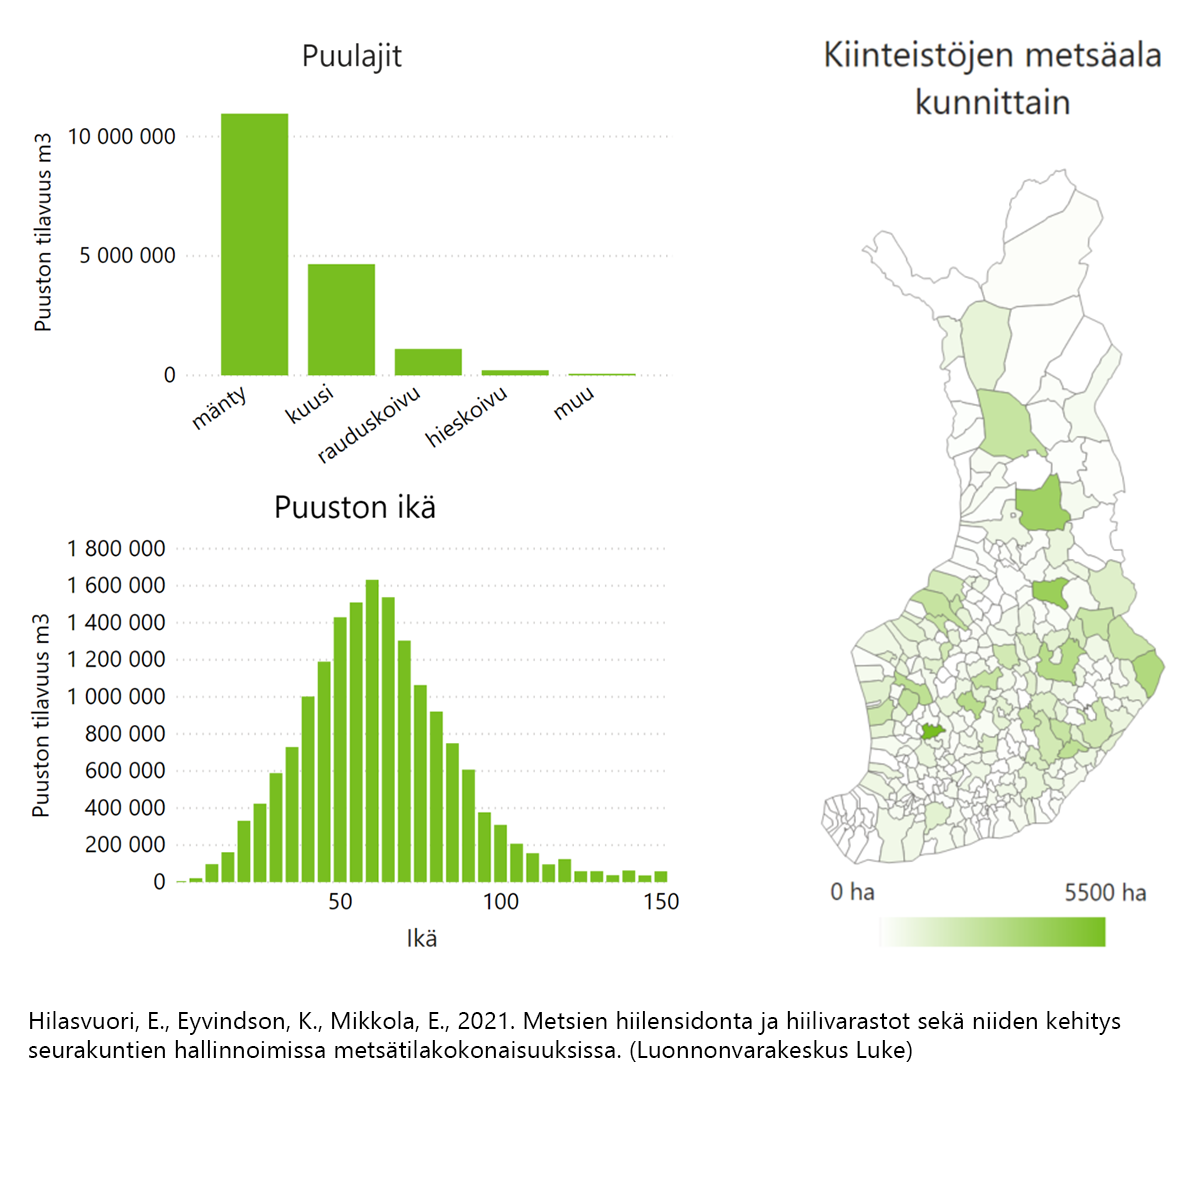 Kaksi pylväsdiagrammia, puulajit ja puuston ikä, sekä Suomen karttaan merkittynä kiinteistöjen metsäala kunnittain.